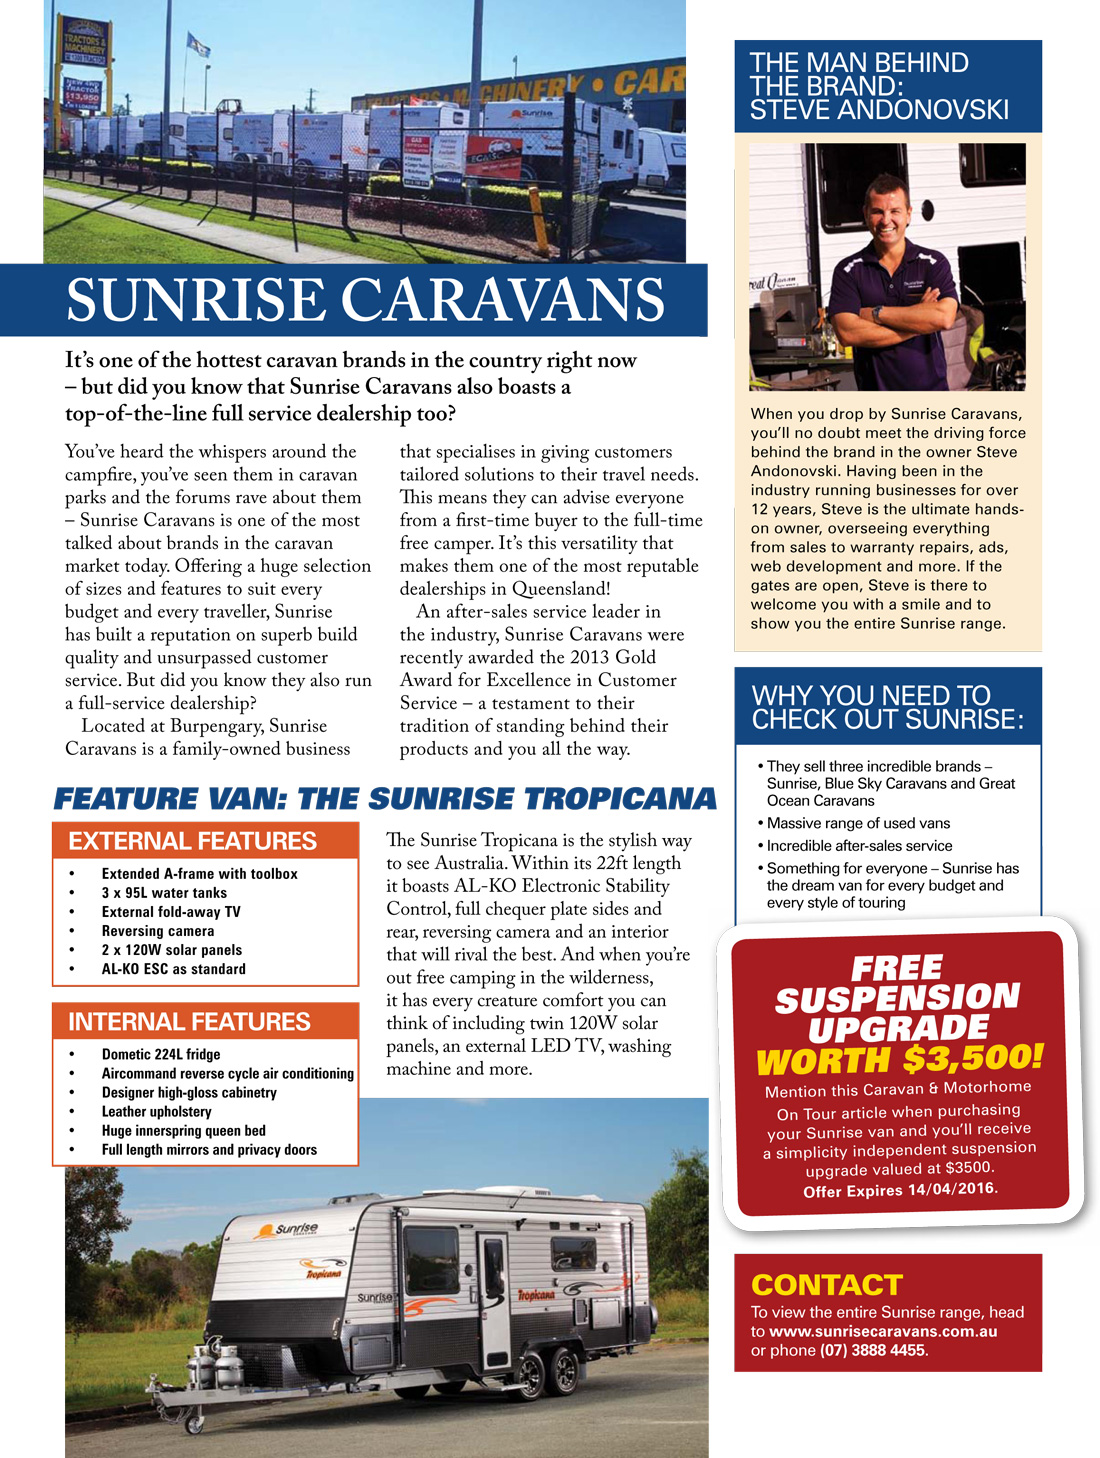 Sunrise-Caravans-News-Article